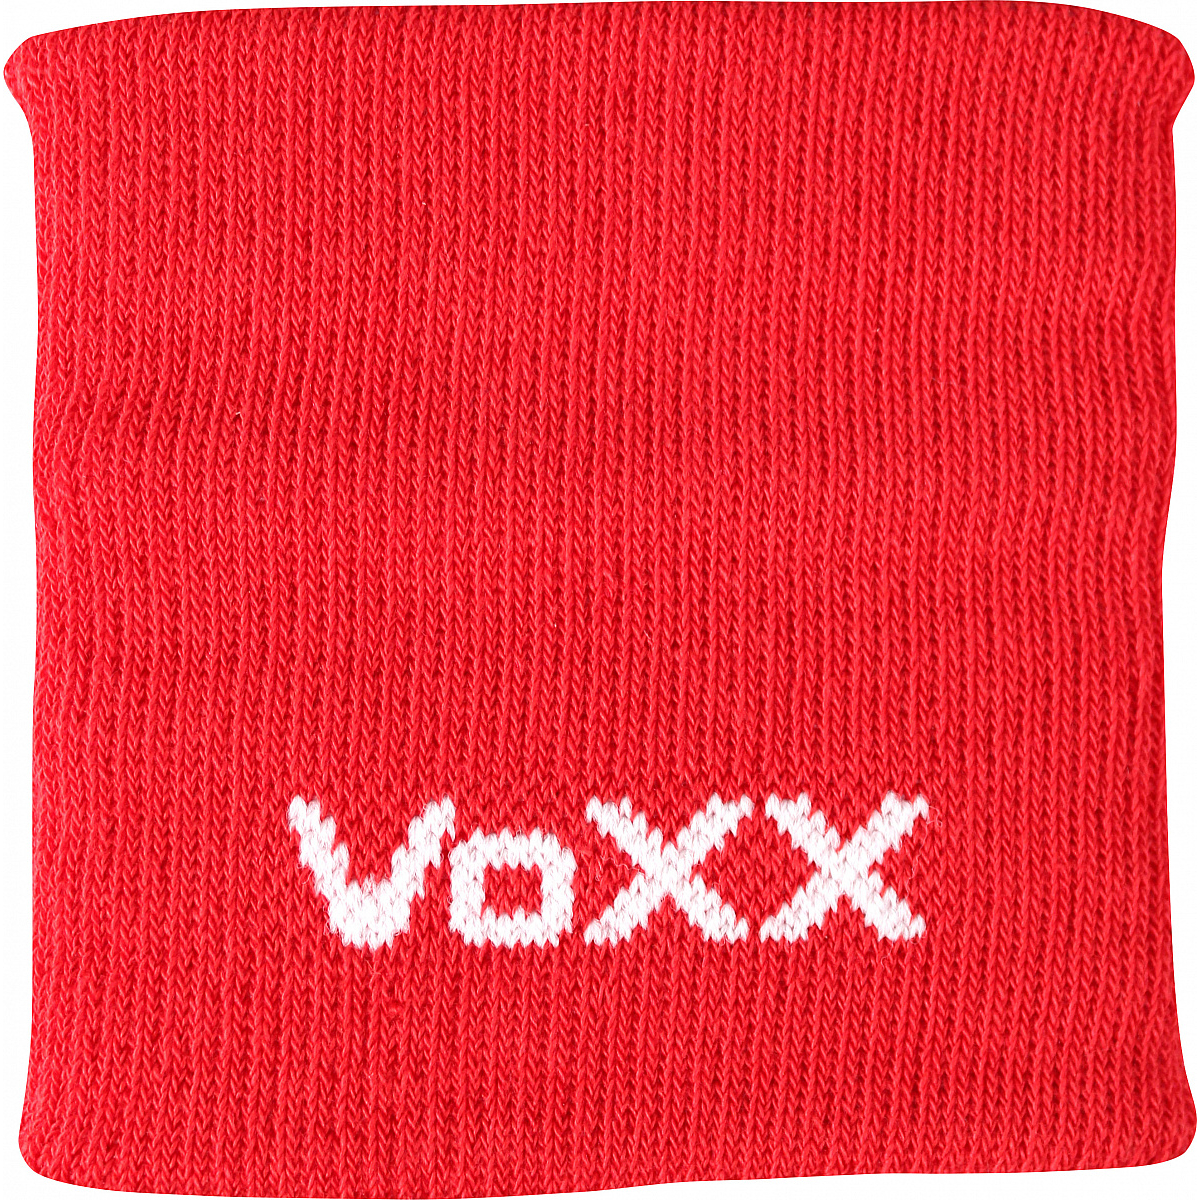 Potítko na zápěstí Voxx - červené